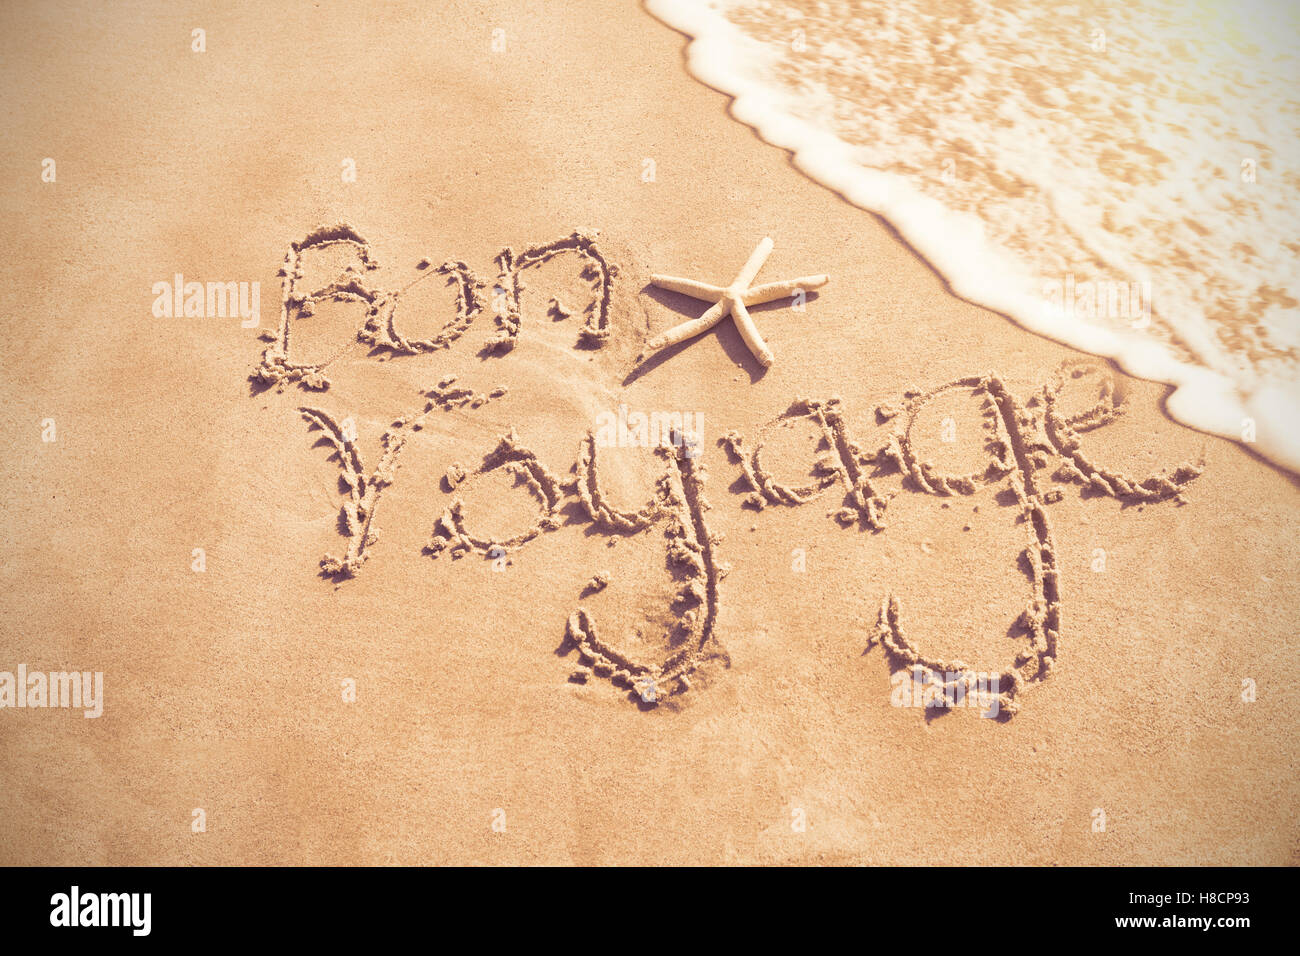 Bon voyage geschrieben am sand Stockfoto